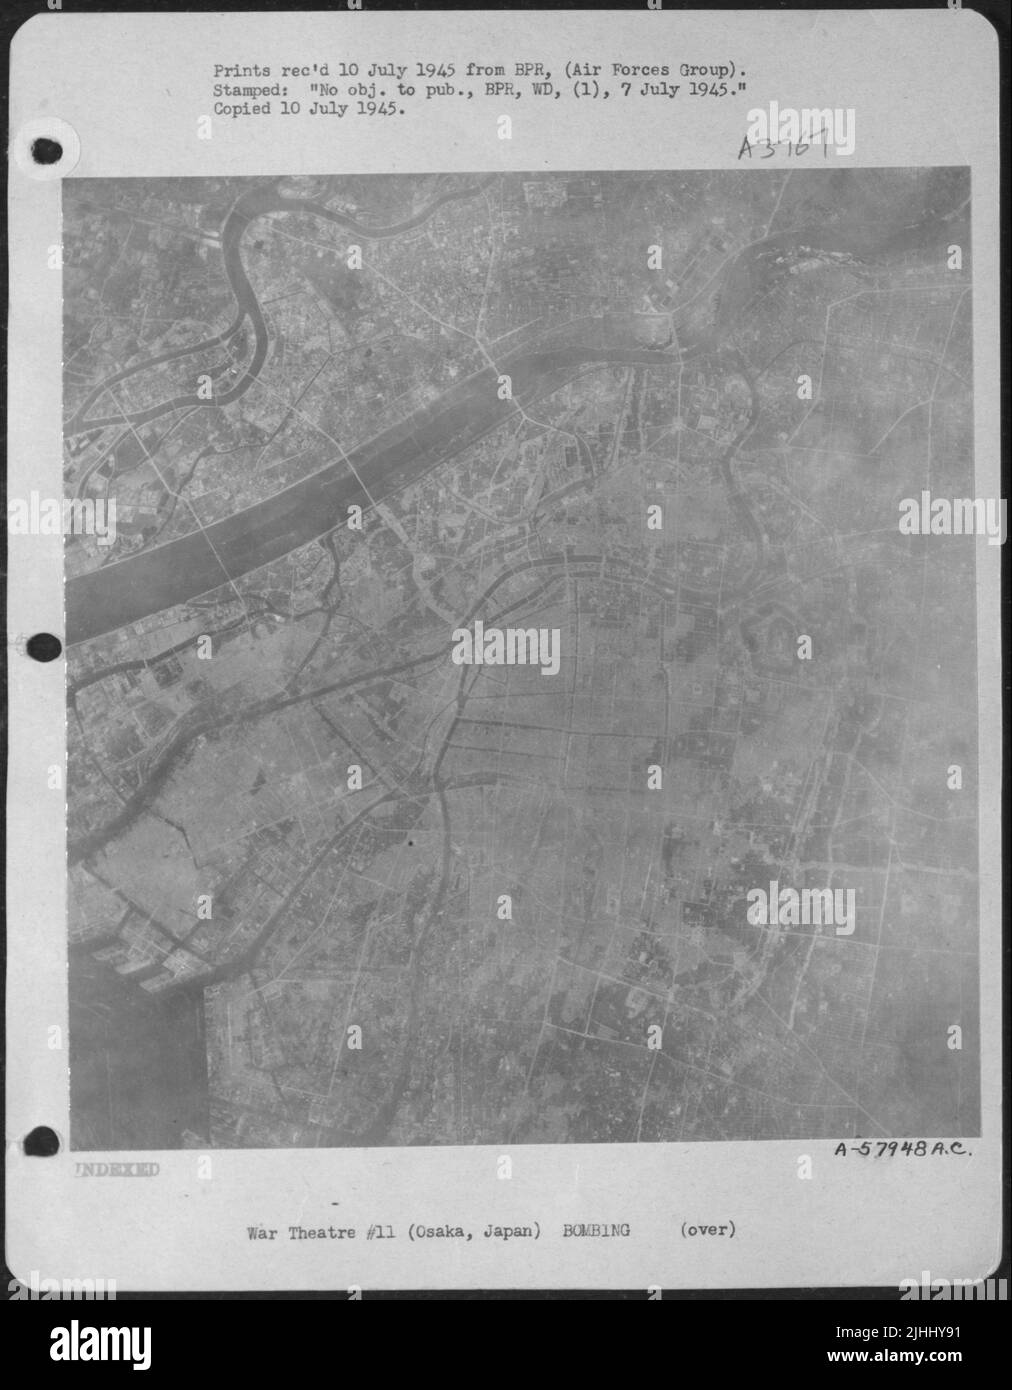 Après - cette photo prise d'Osaka, Japon sur 4 juin 1945 à partir de 30 000 pieds montre les zones brûlées à cette date. Les zones claires indiquent des dommages. Cette rivière Shin Yodo peut être clairement vue. Banque D'Images